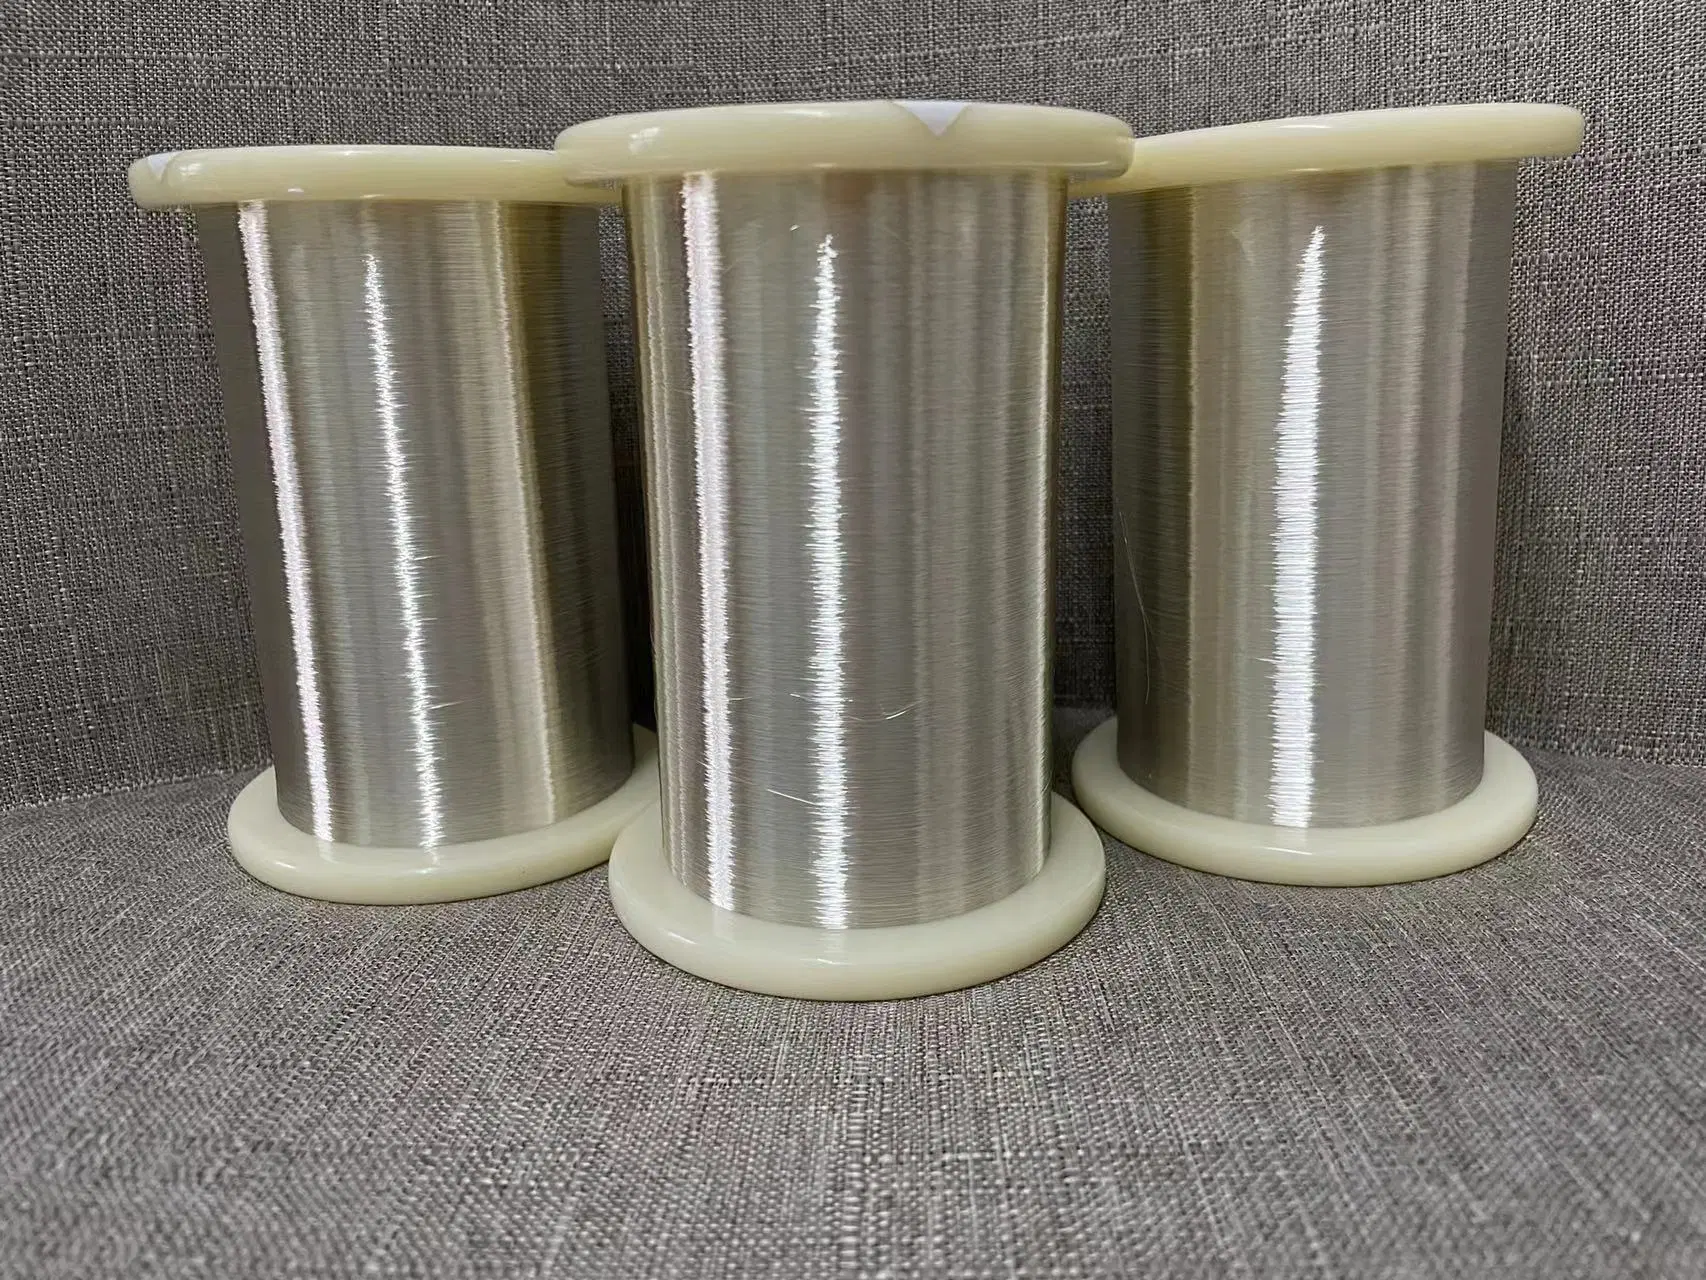 Alambre de aleación de plata/Cable de cobre chapados en plata de alambre de cobre chapados en plata.